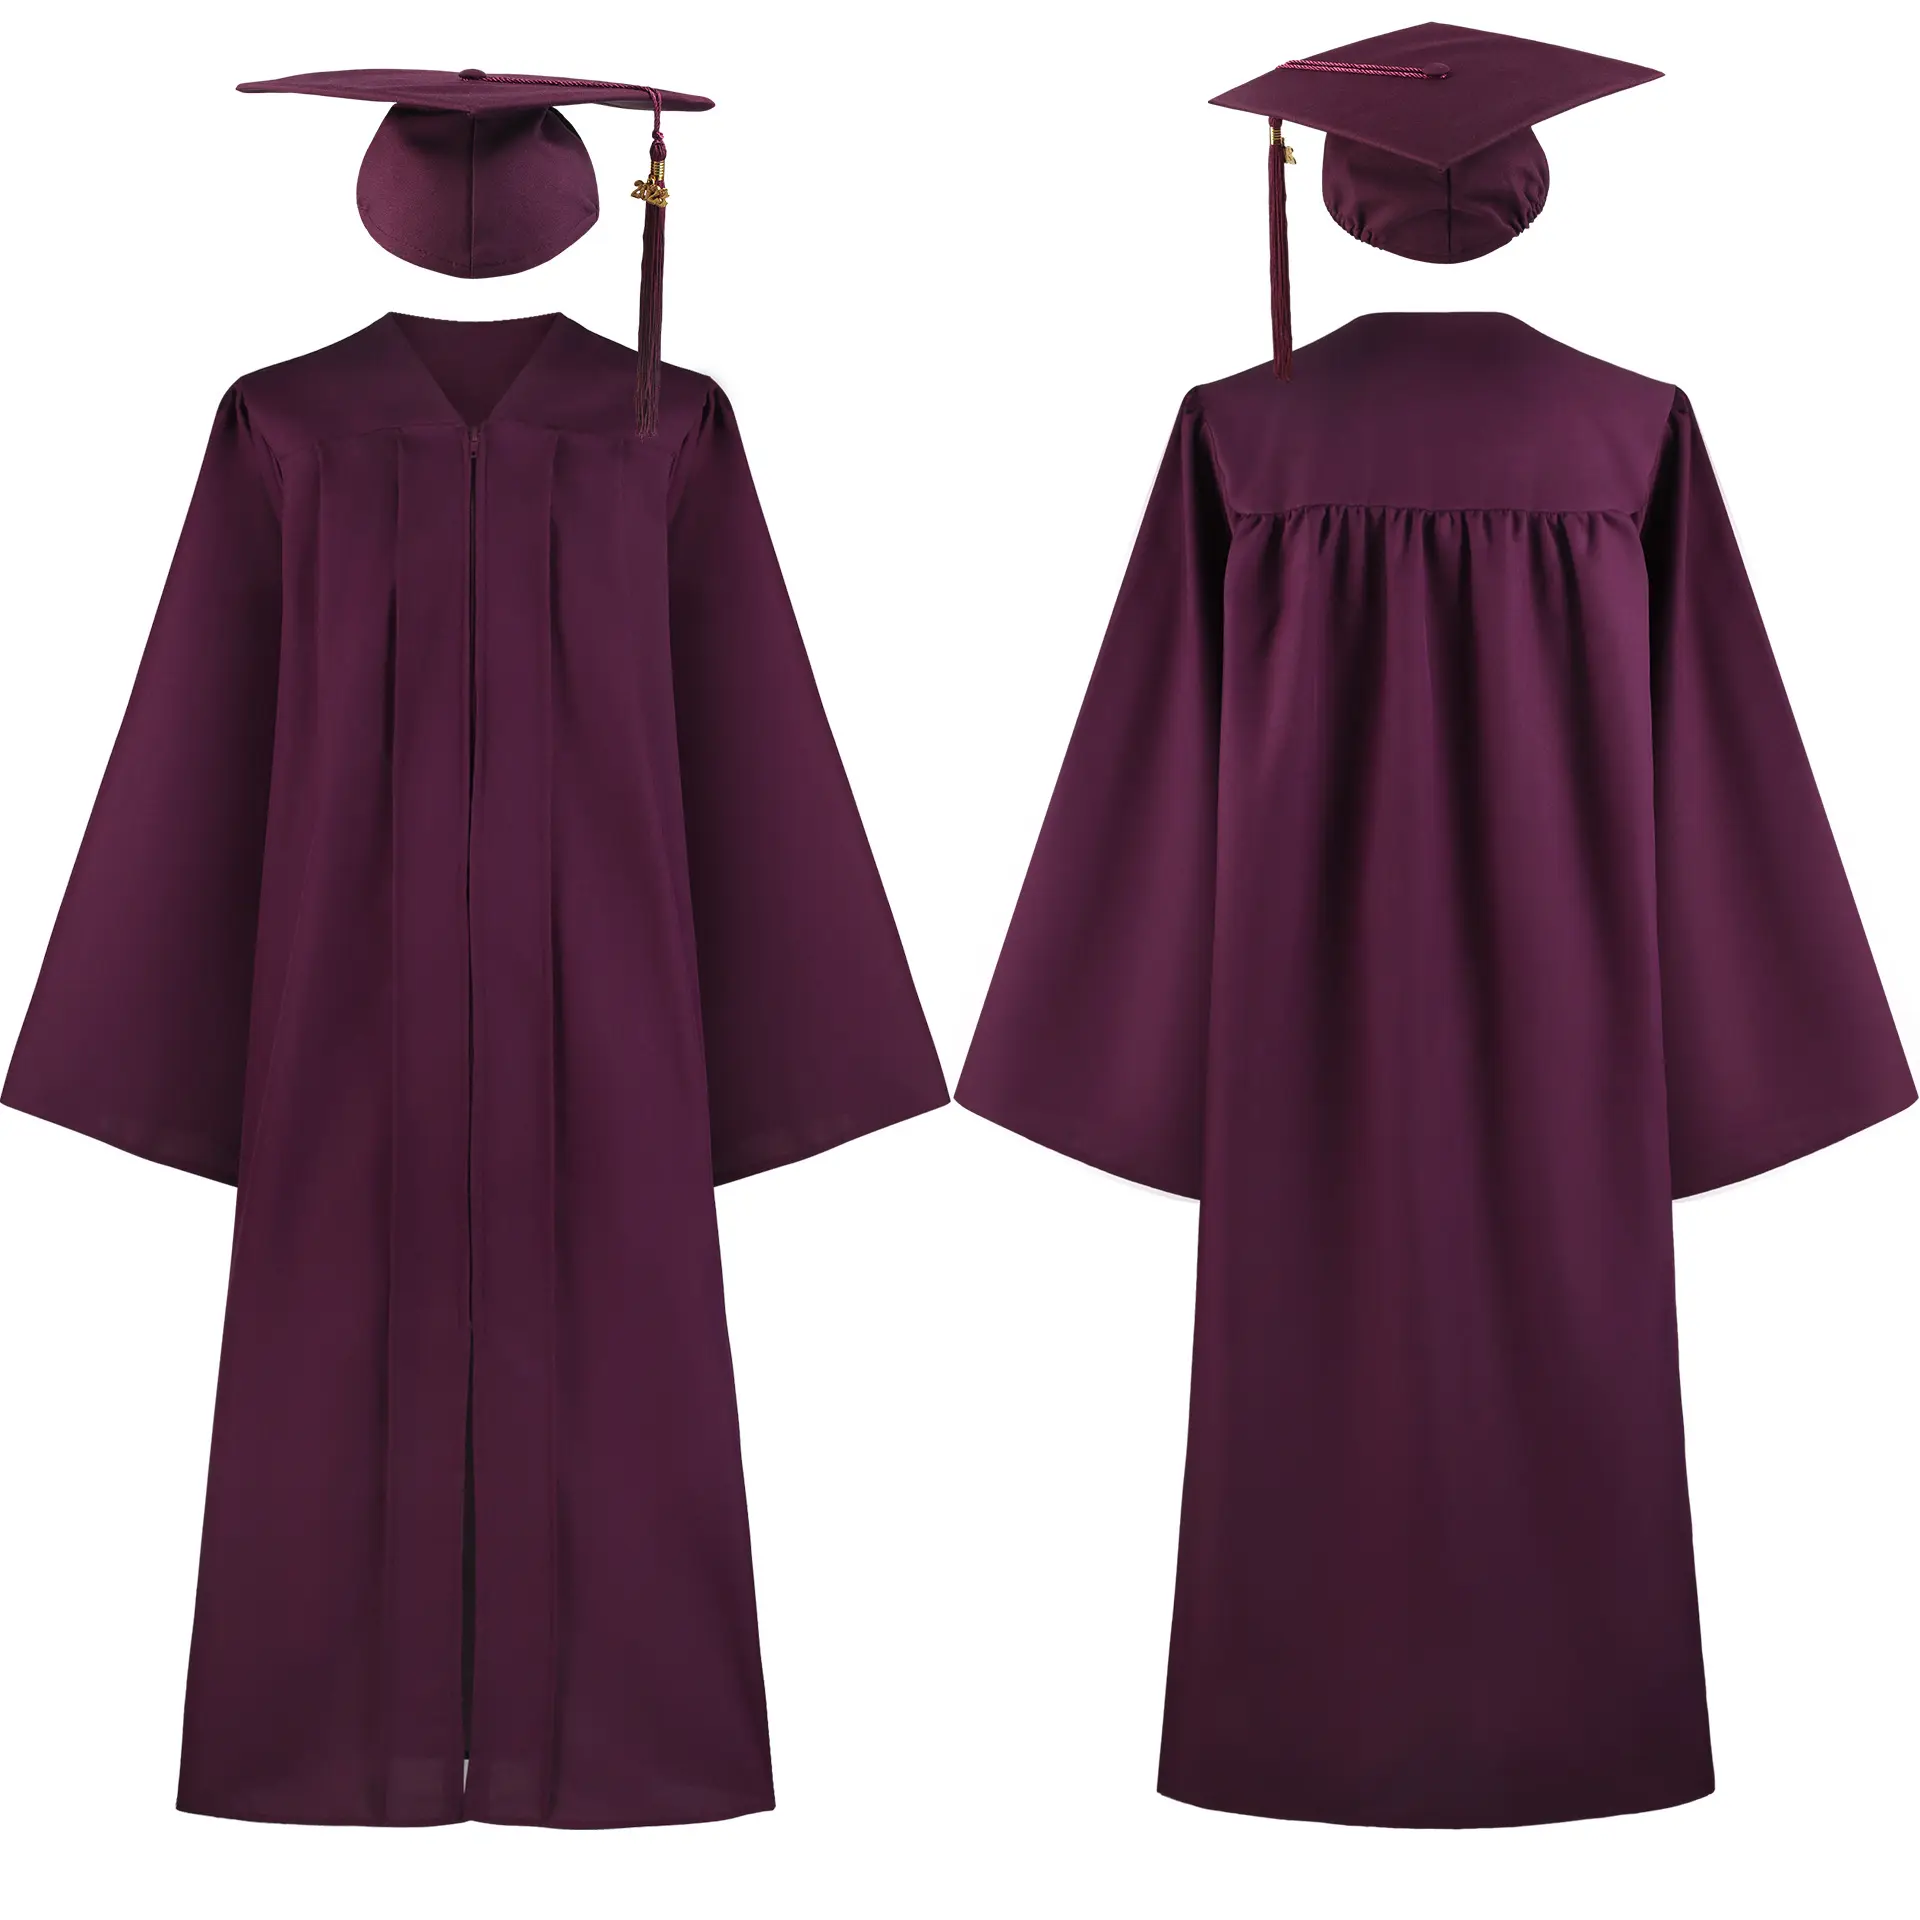 独身のドレス大人の卒業ドレスヨーロッパとアメリカの高校の大学の衣装コスプレパフォーマンスコスチューム